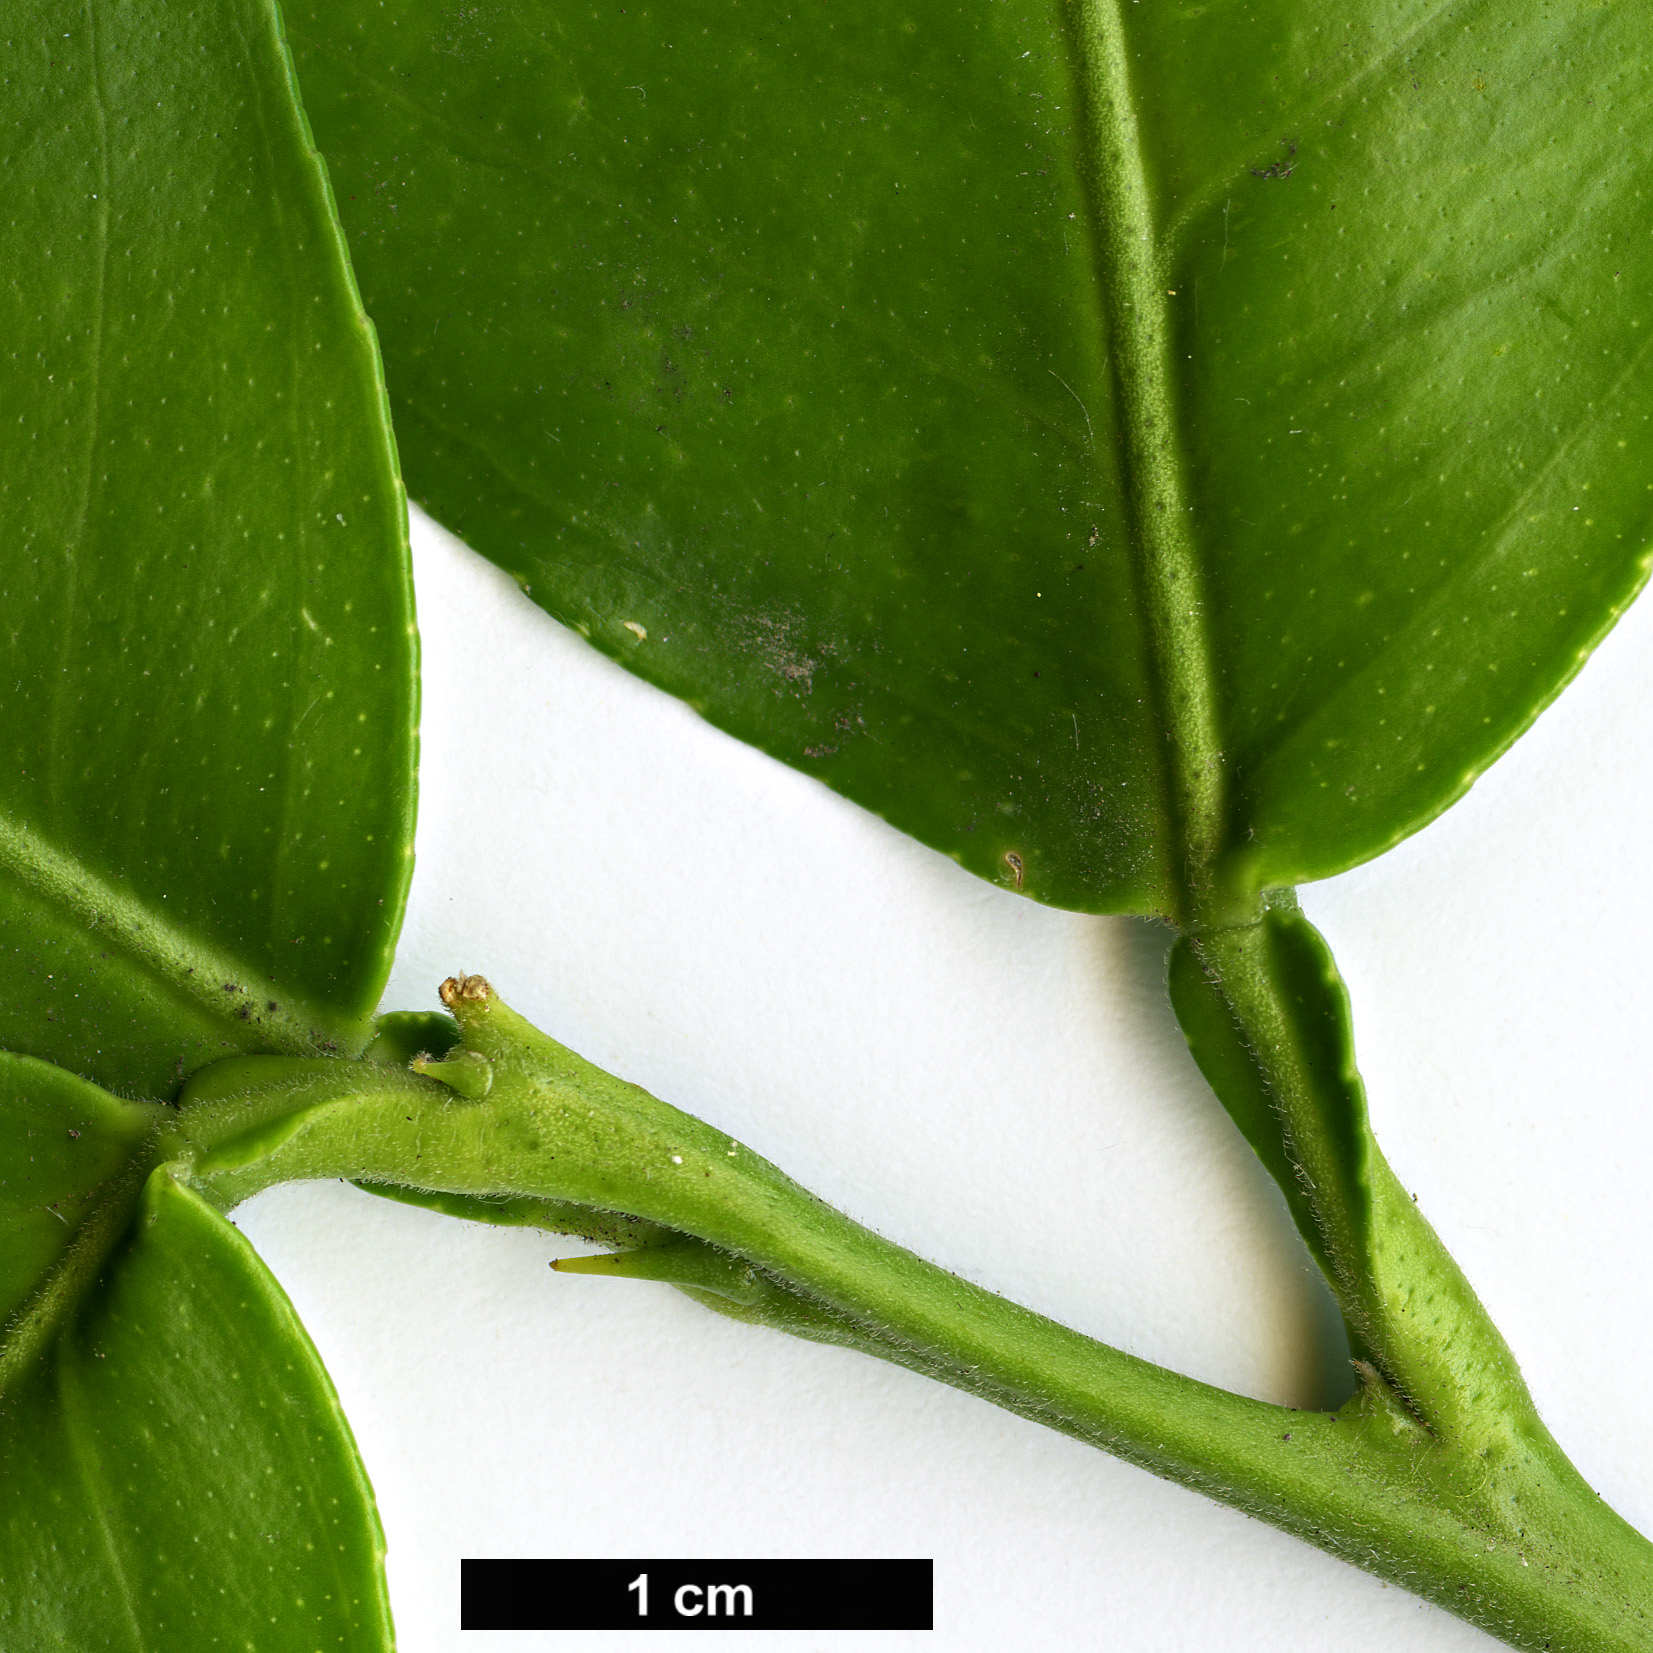 High resolution image: Family: Rutaceae - Genus: Citrus - Taxon: medica